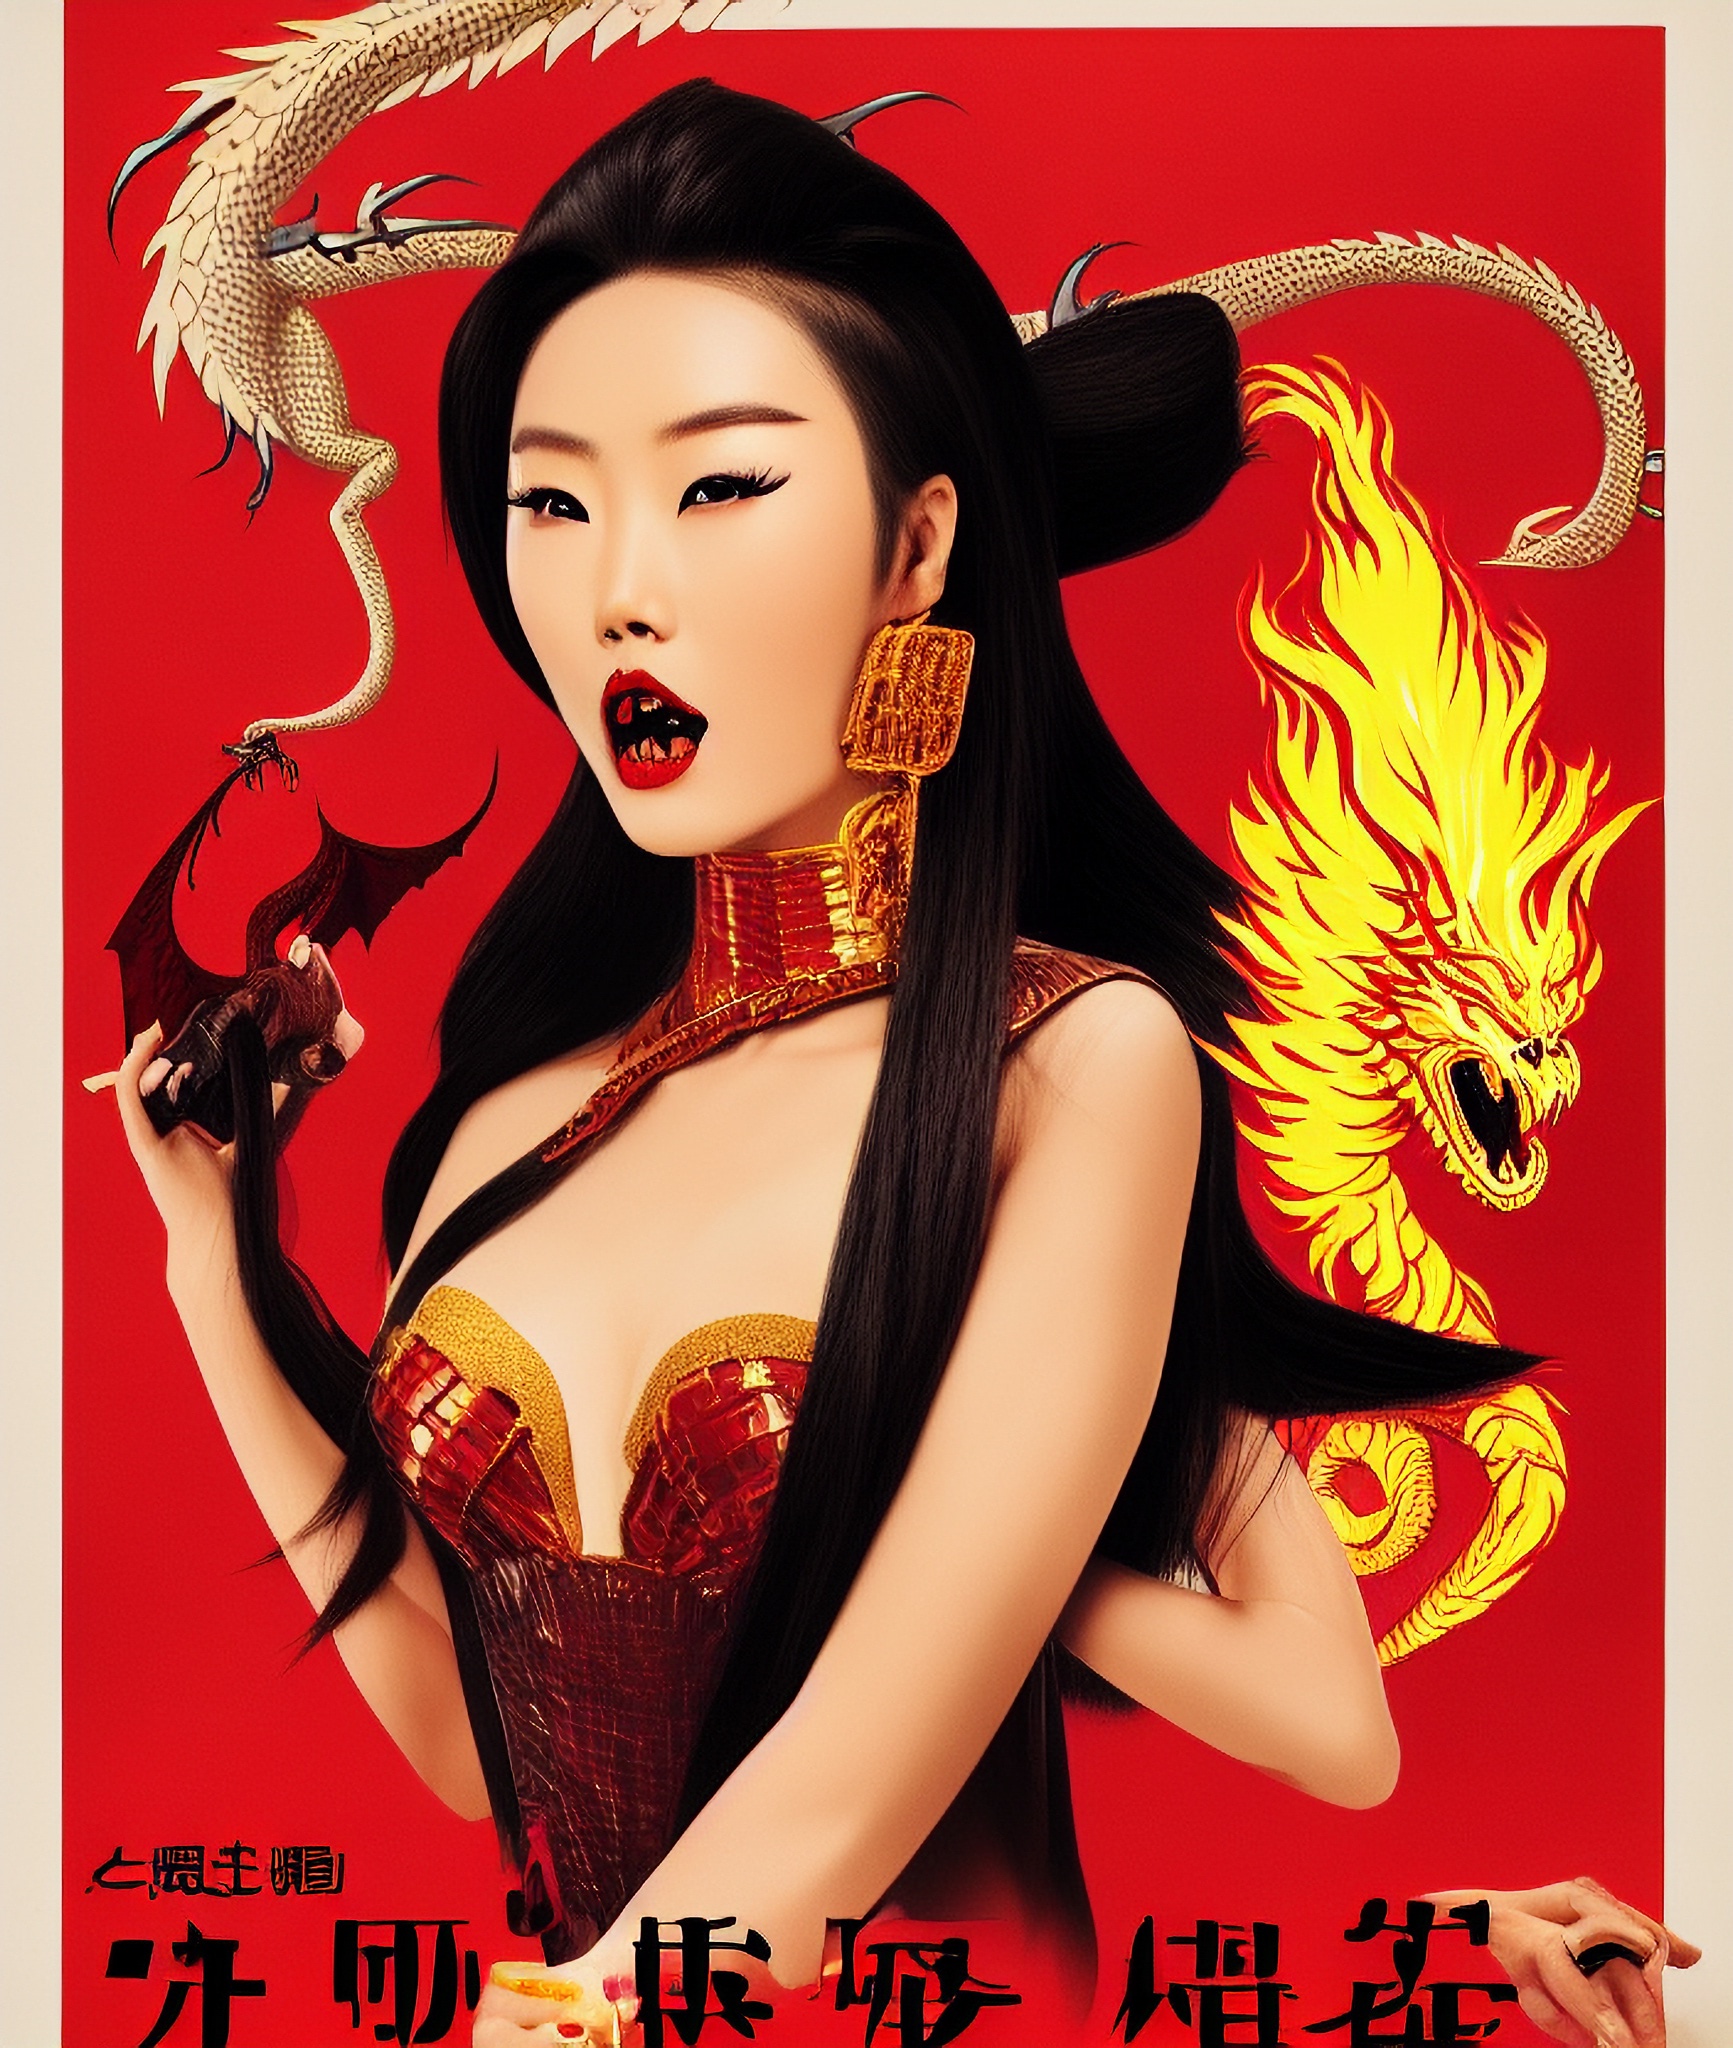 movie-vintage-poster-chinese-hong-kong-dragon